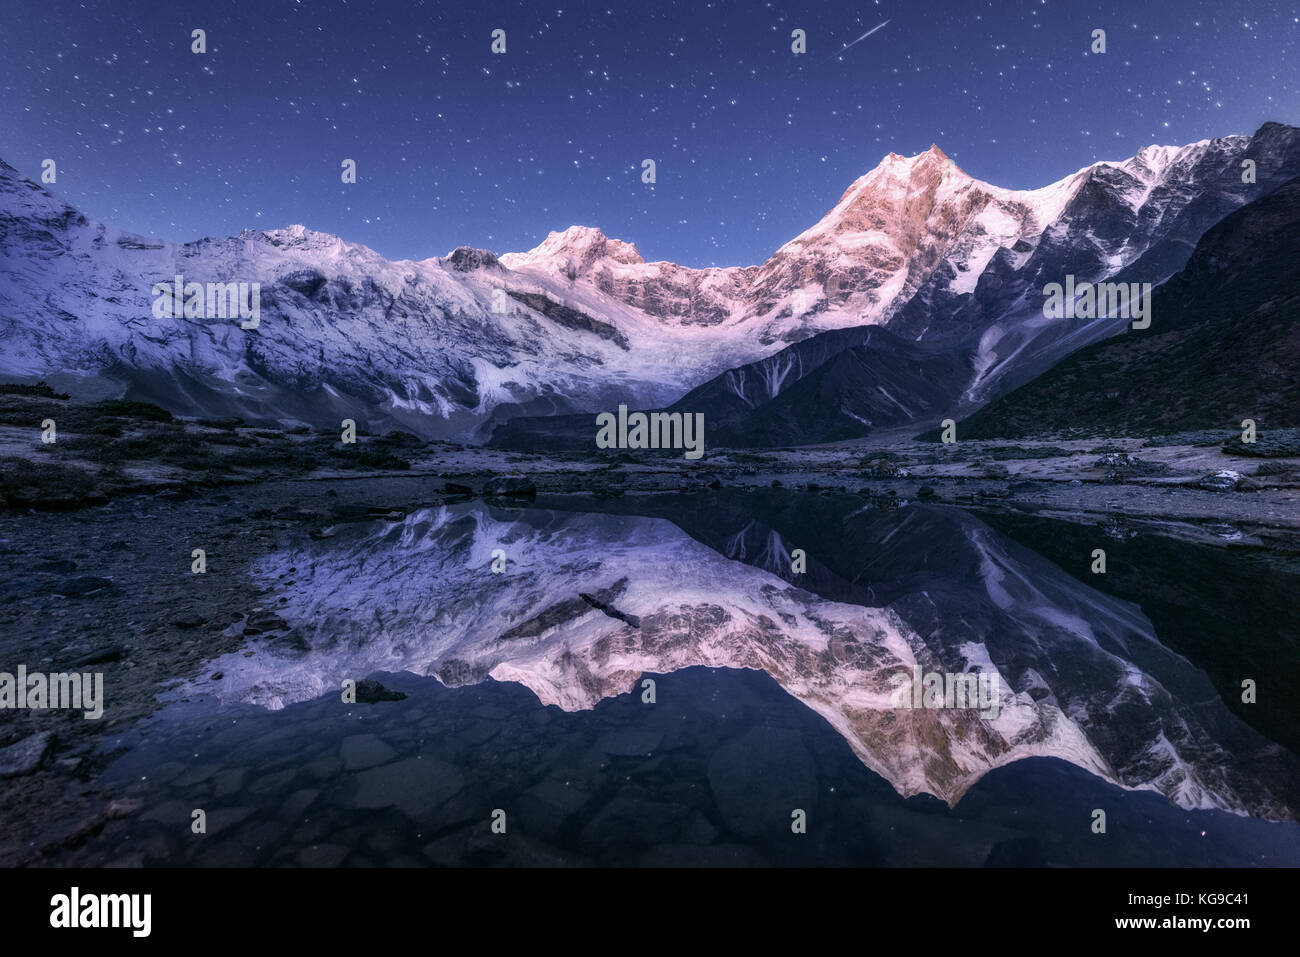 Incredibile scena notturna con himalayan montagne e lago di montagna alla notte stellata in Nepal. paesaggio con alte rocce a picco innevato e il cielo con le stelle Foto Stock